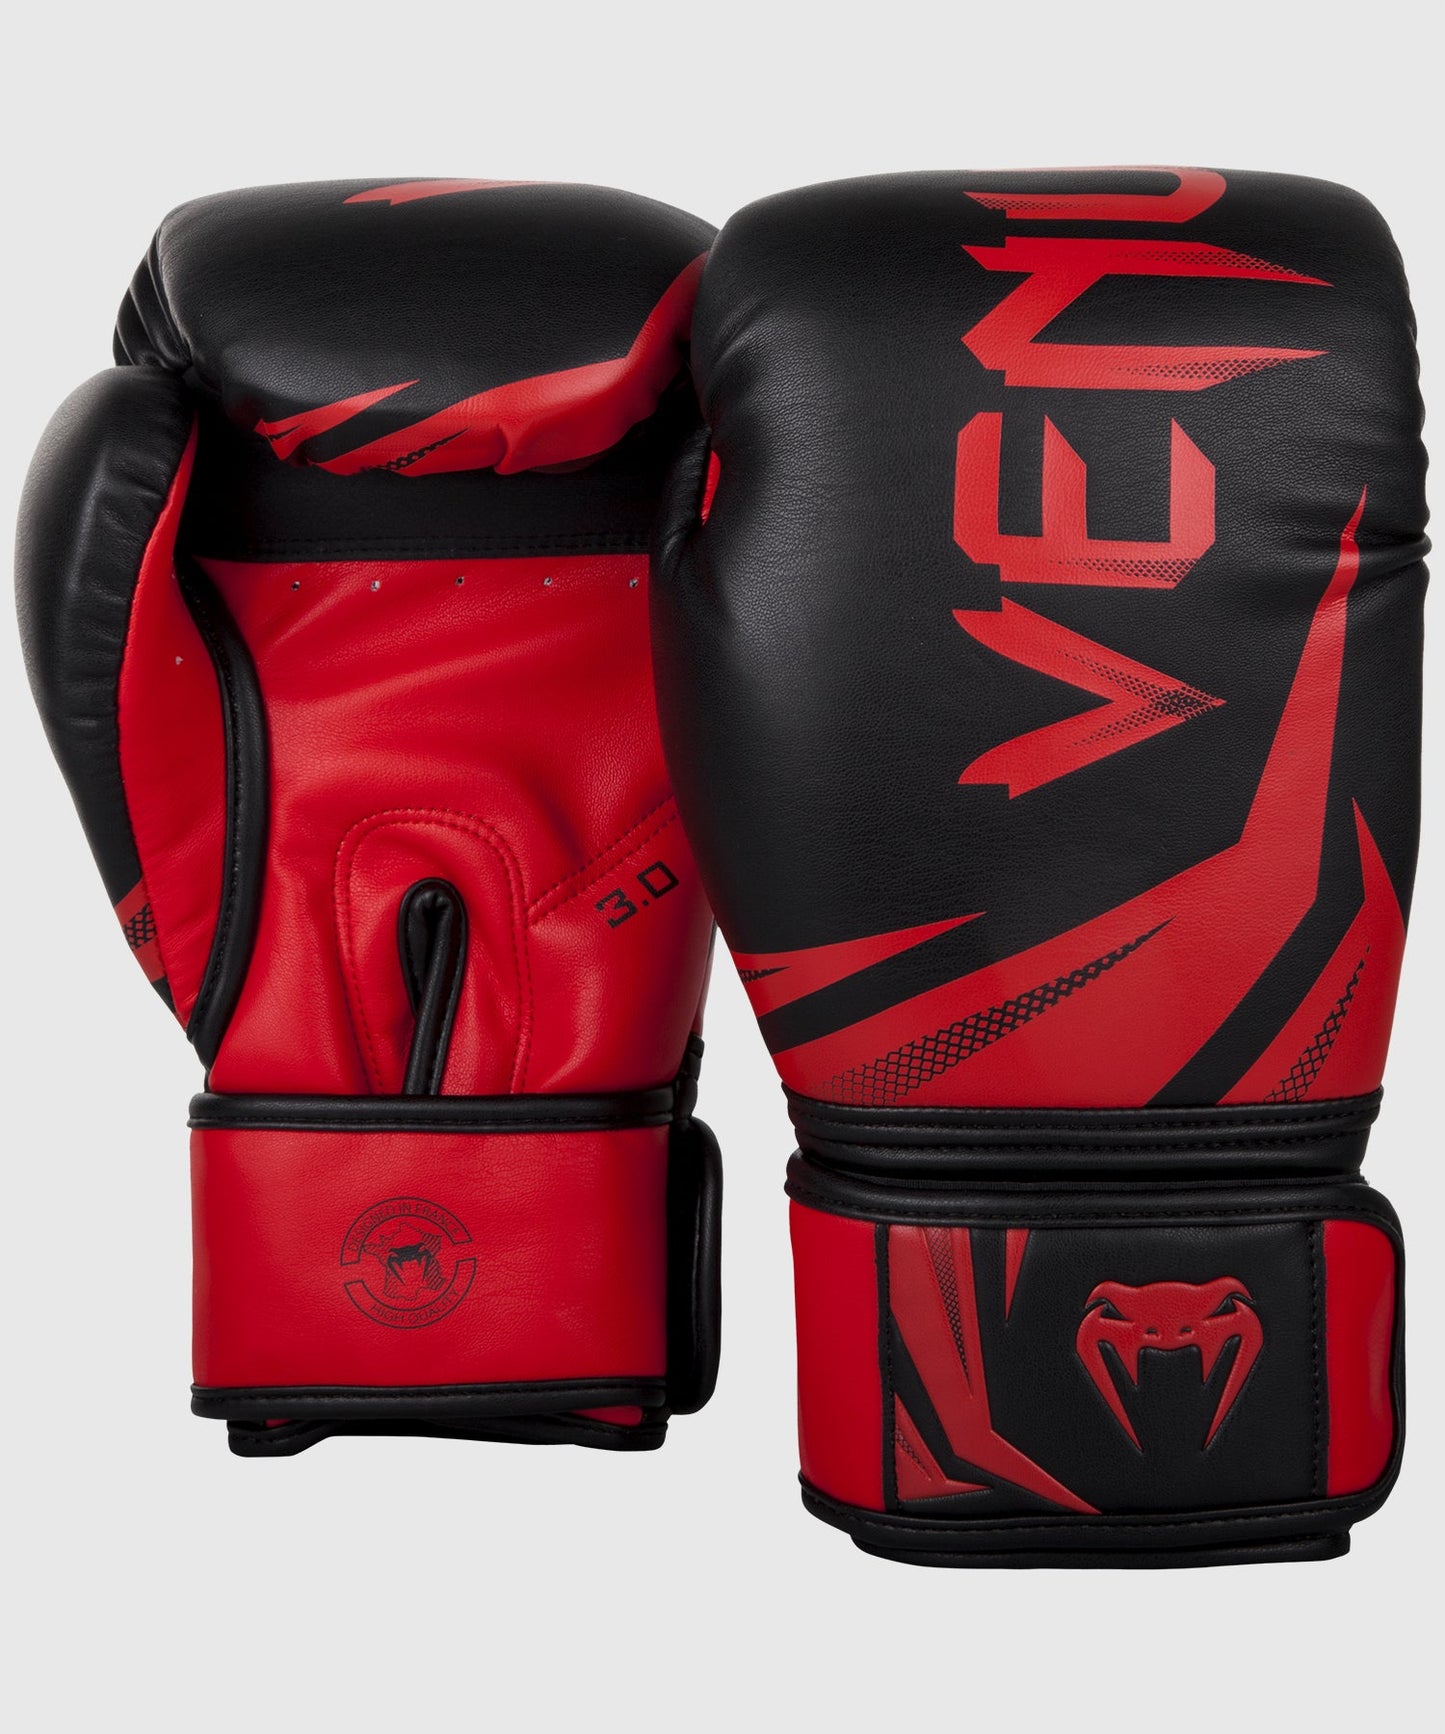 Gants de boxe Venum Challenger 3.0 resistant et durable